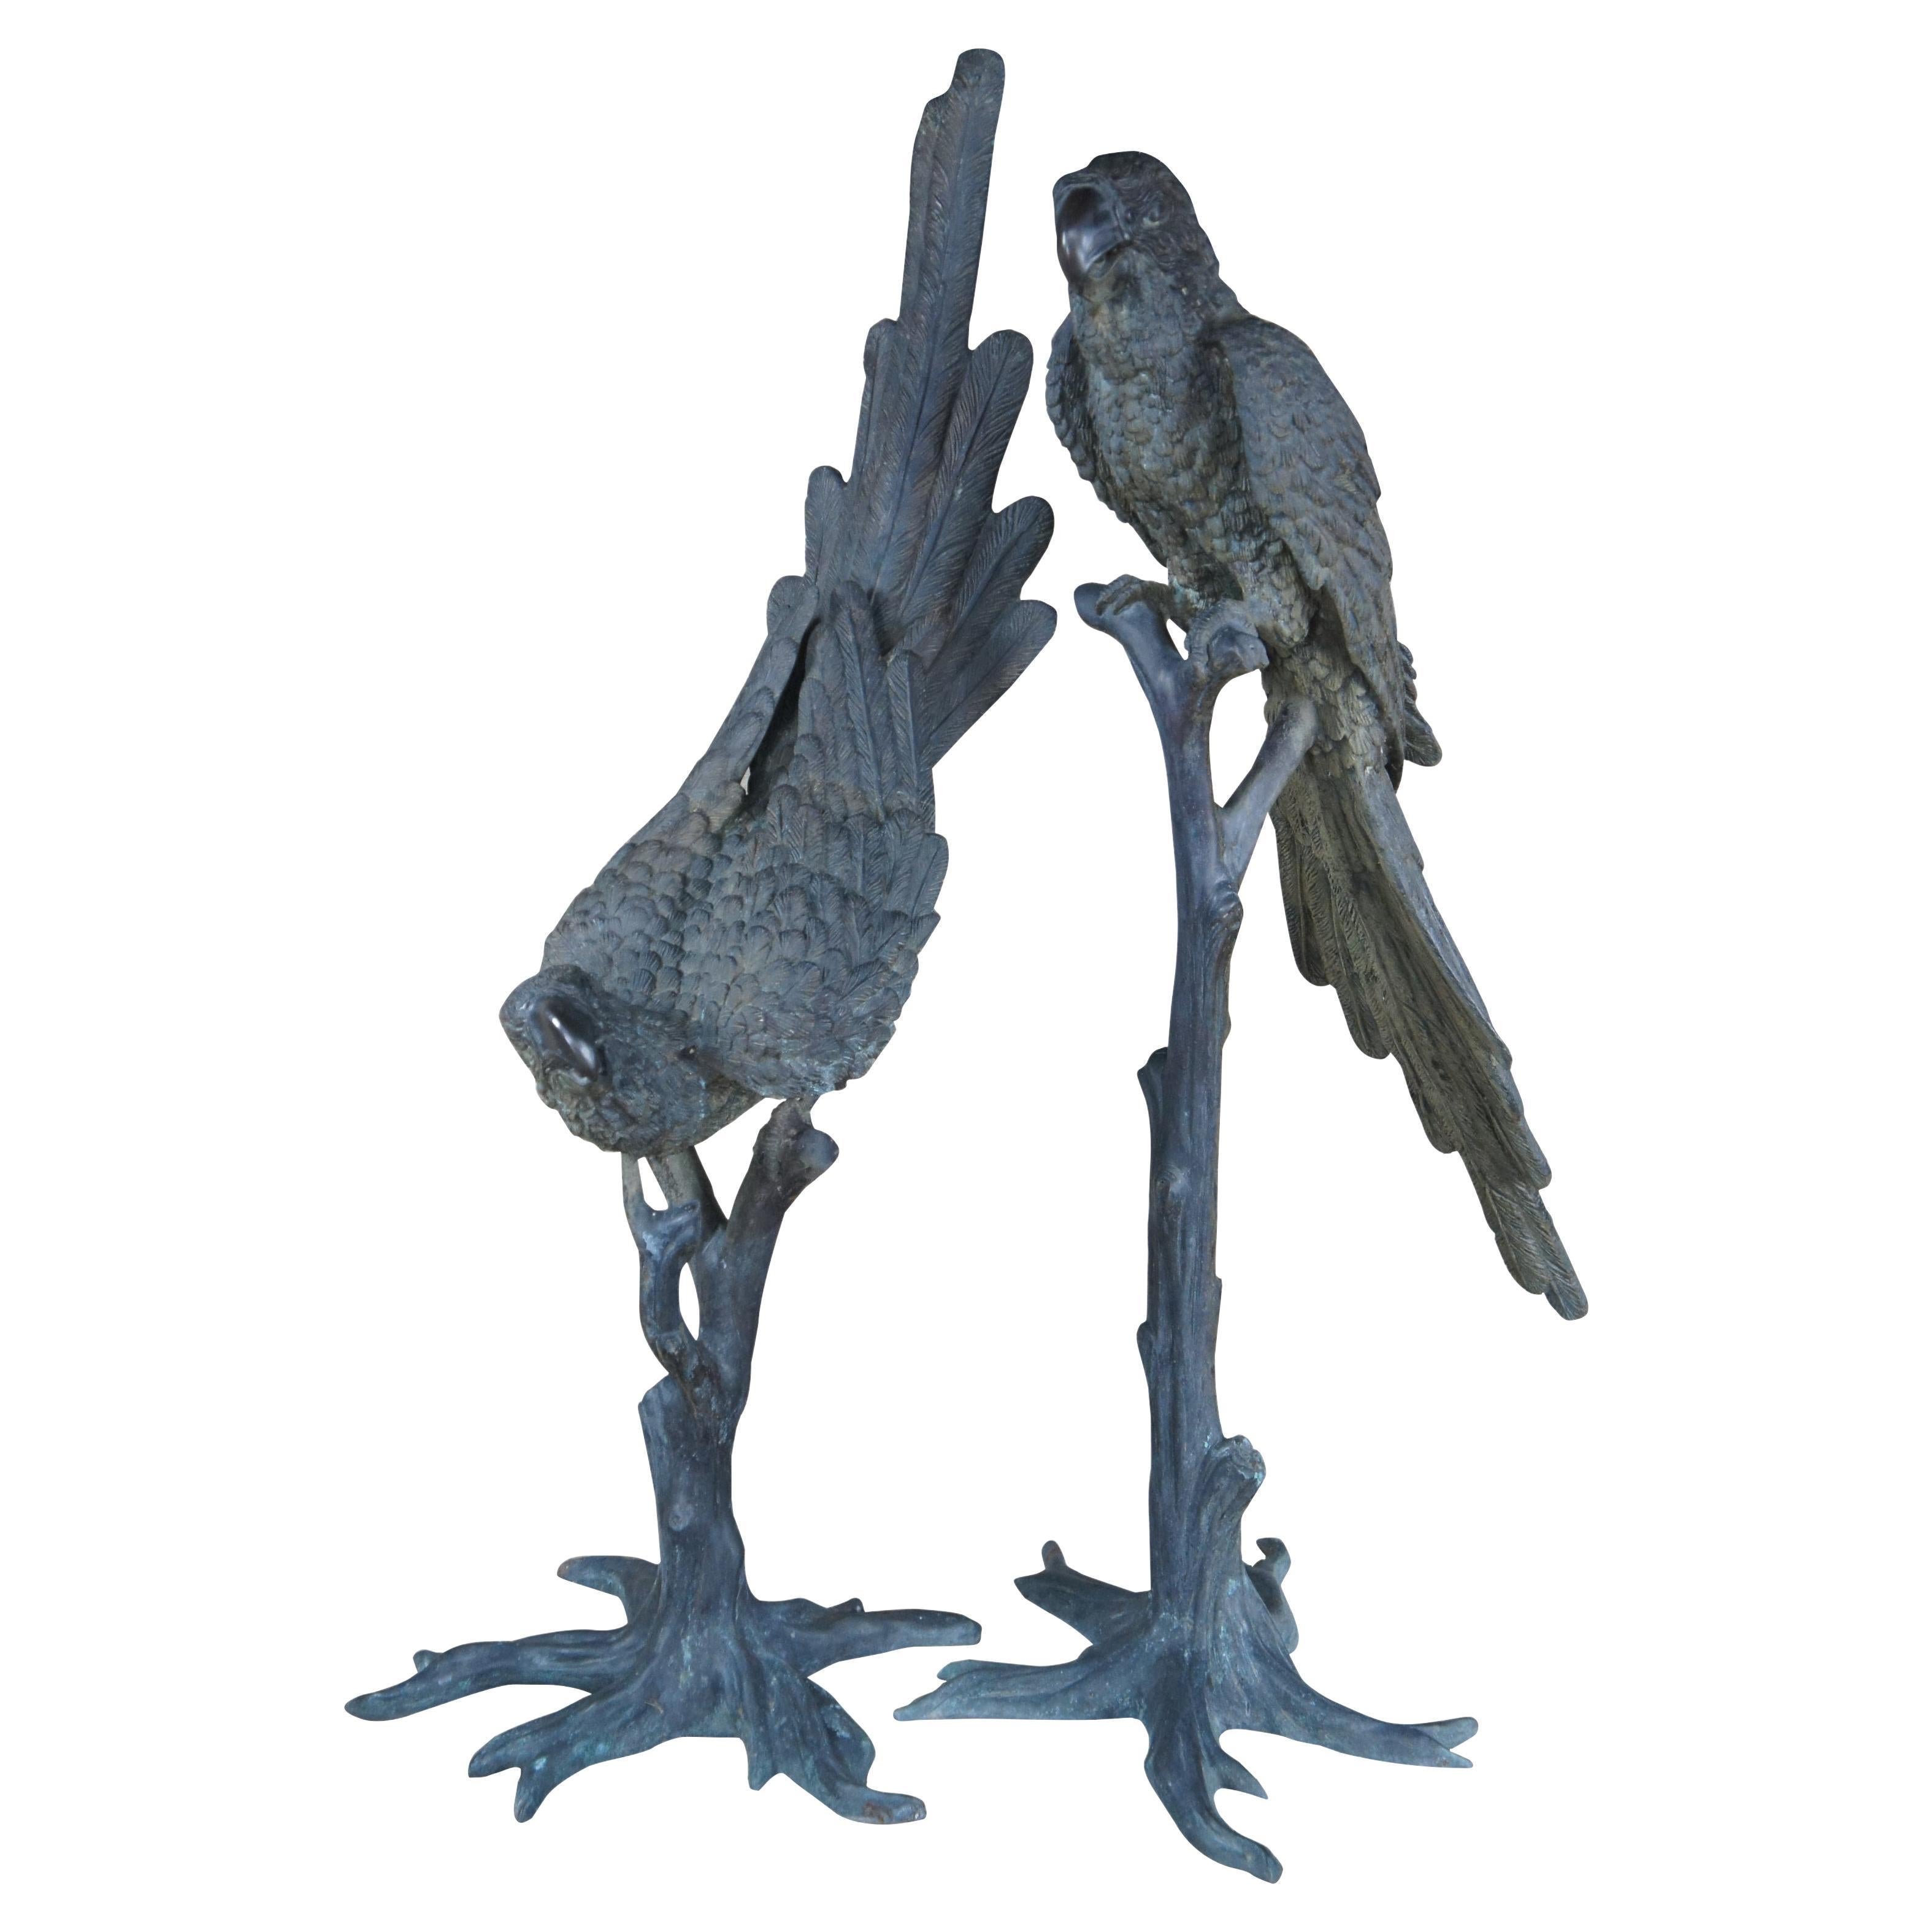 Antique French Art Deco Pair Lifesize Bronze Parrot Bird Sculptures Statues 55" For Sale